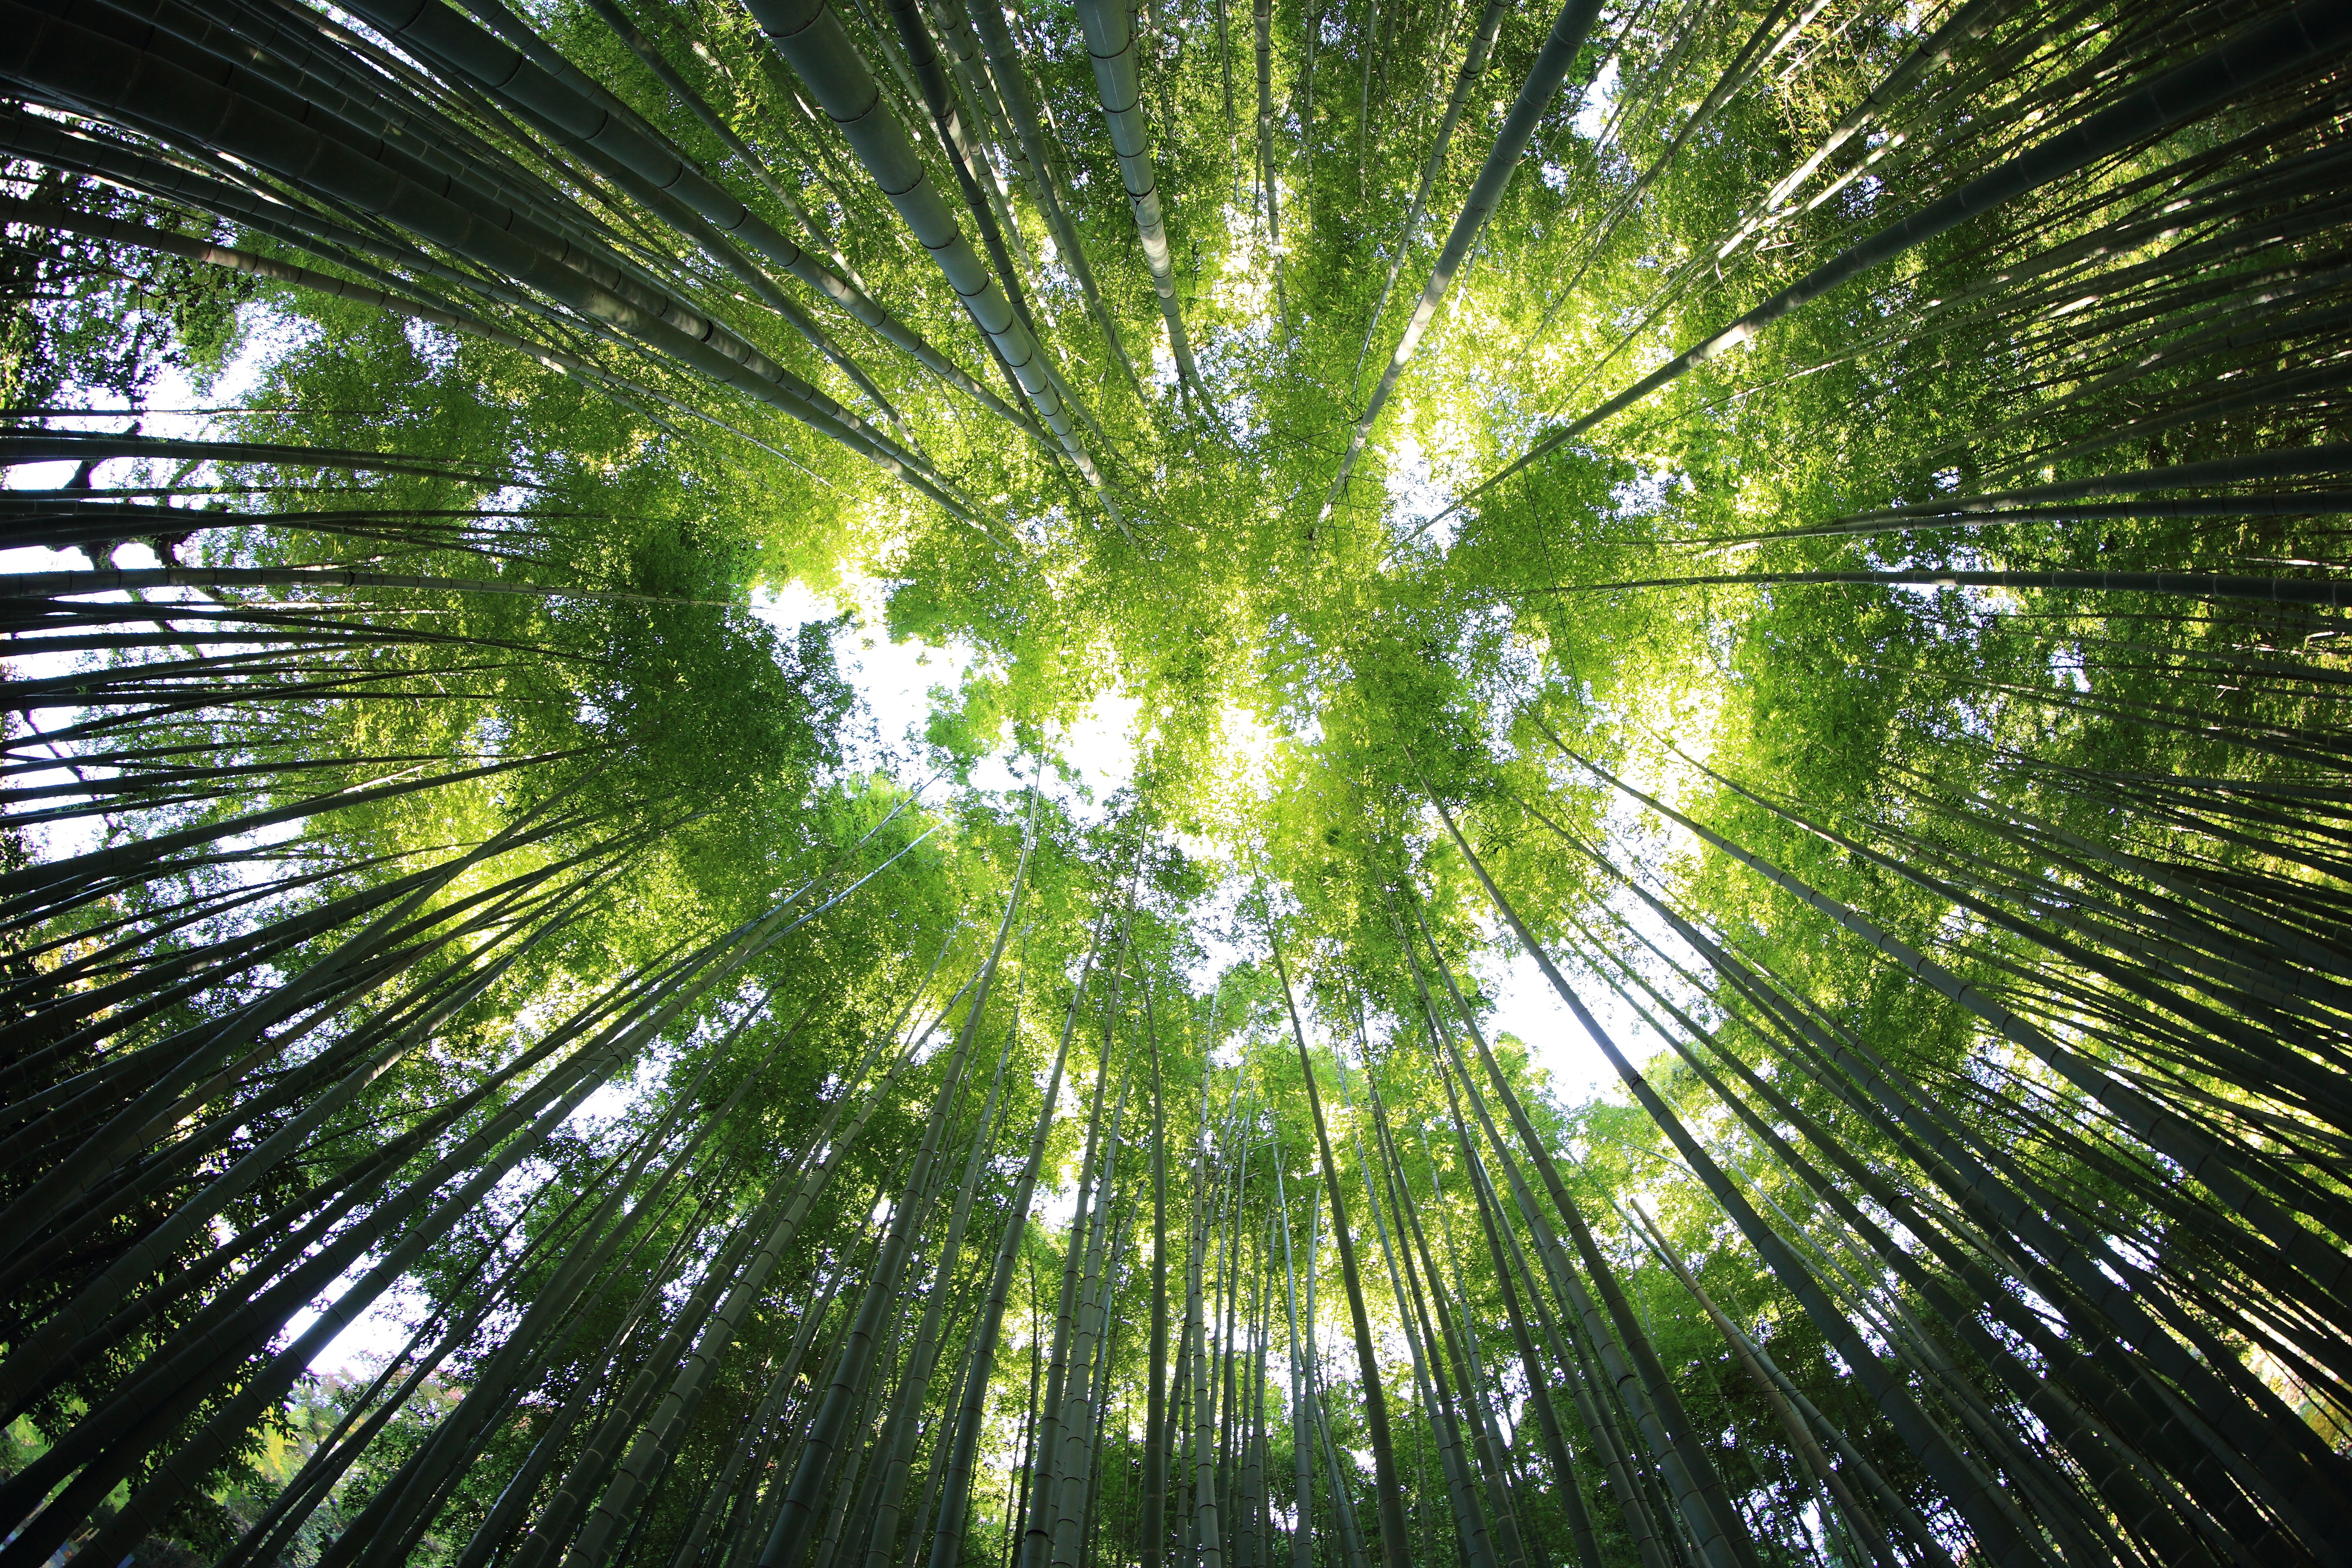 Lungen der Erde schützen. Eine-Welt-Programm der Grünen Woche eröffnete mit Engagement prominenter World Vision-Unterstützer für Wälder (German)